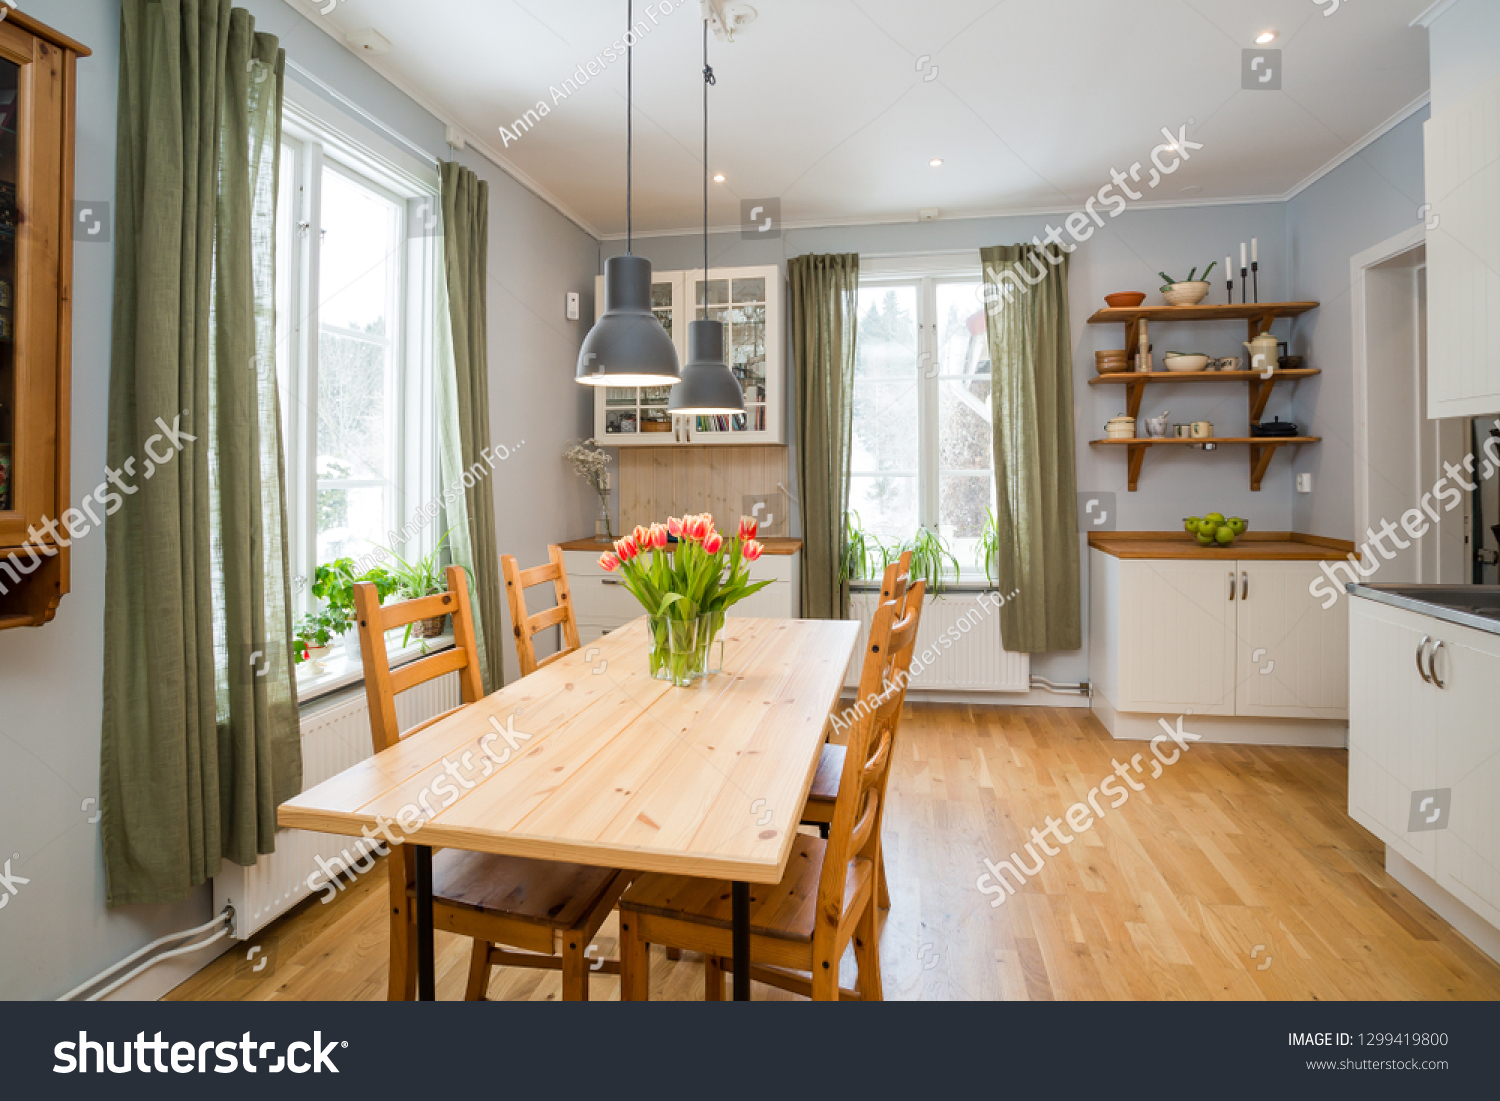 Stock Photo Modern Kitchen In Sweden 1299419800 